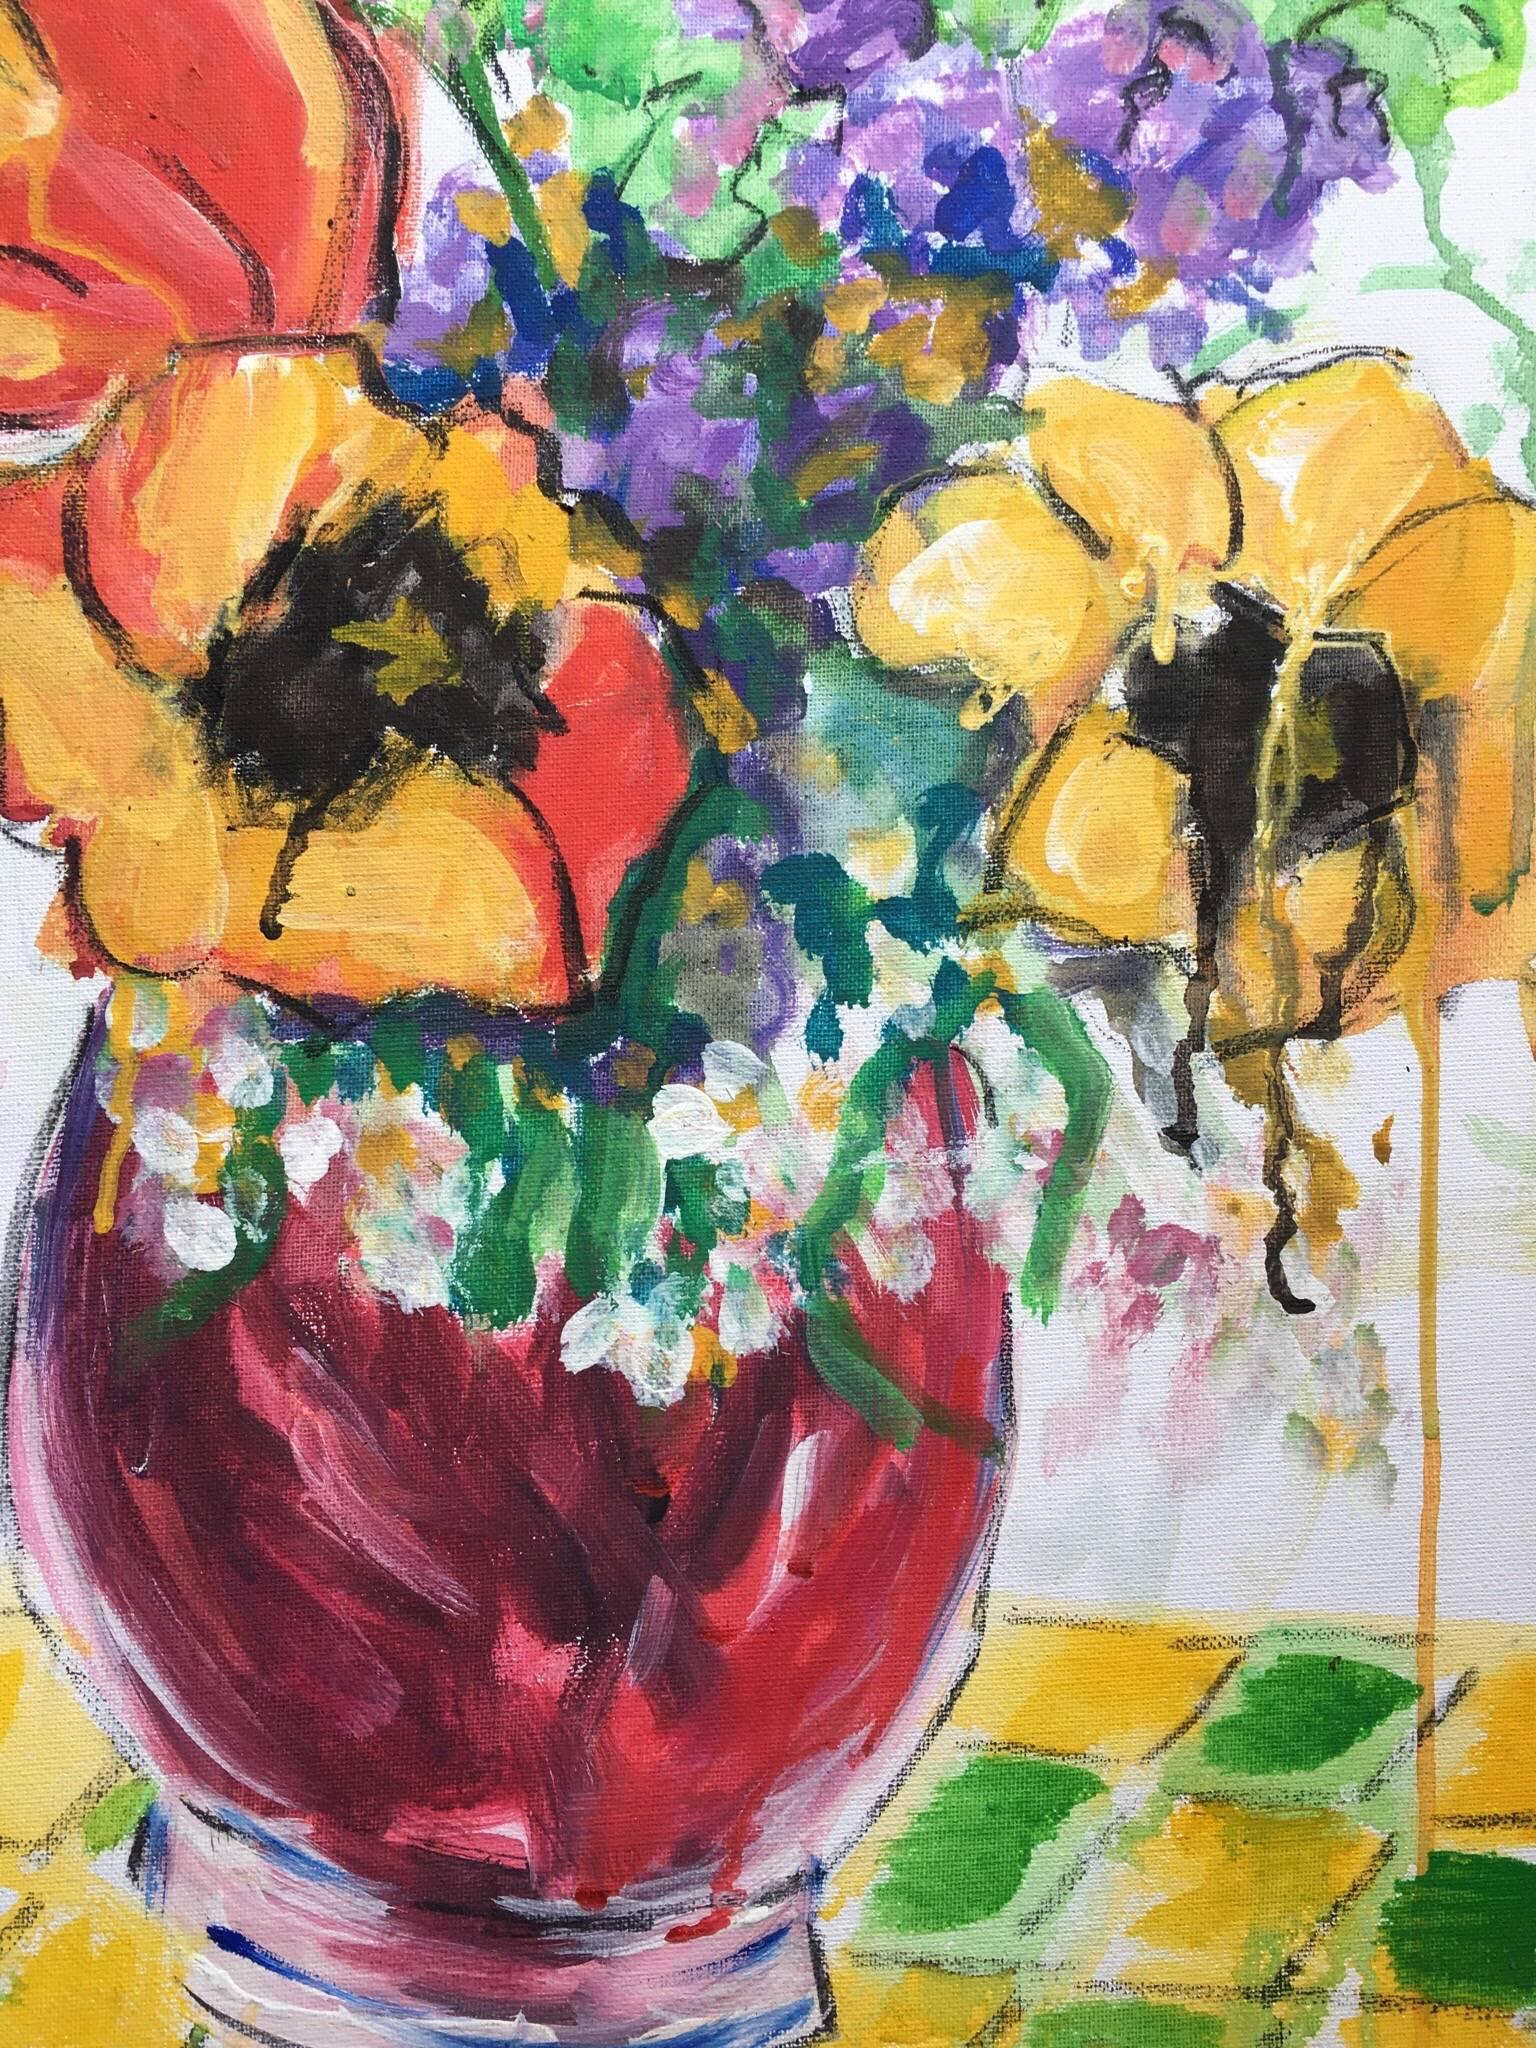 Mehrfarbige Blumen in einer Vase, Impressionist, britischer Künstler
von Pamela Cawley, Britin, 20. Jahrhundert
ölgemälde auf Leinwand, ungerahmt
leinwand: 18 x 15 Zoll 

Beeindruckendes originales impressionistisches Ölgemälde der britischen